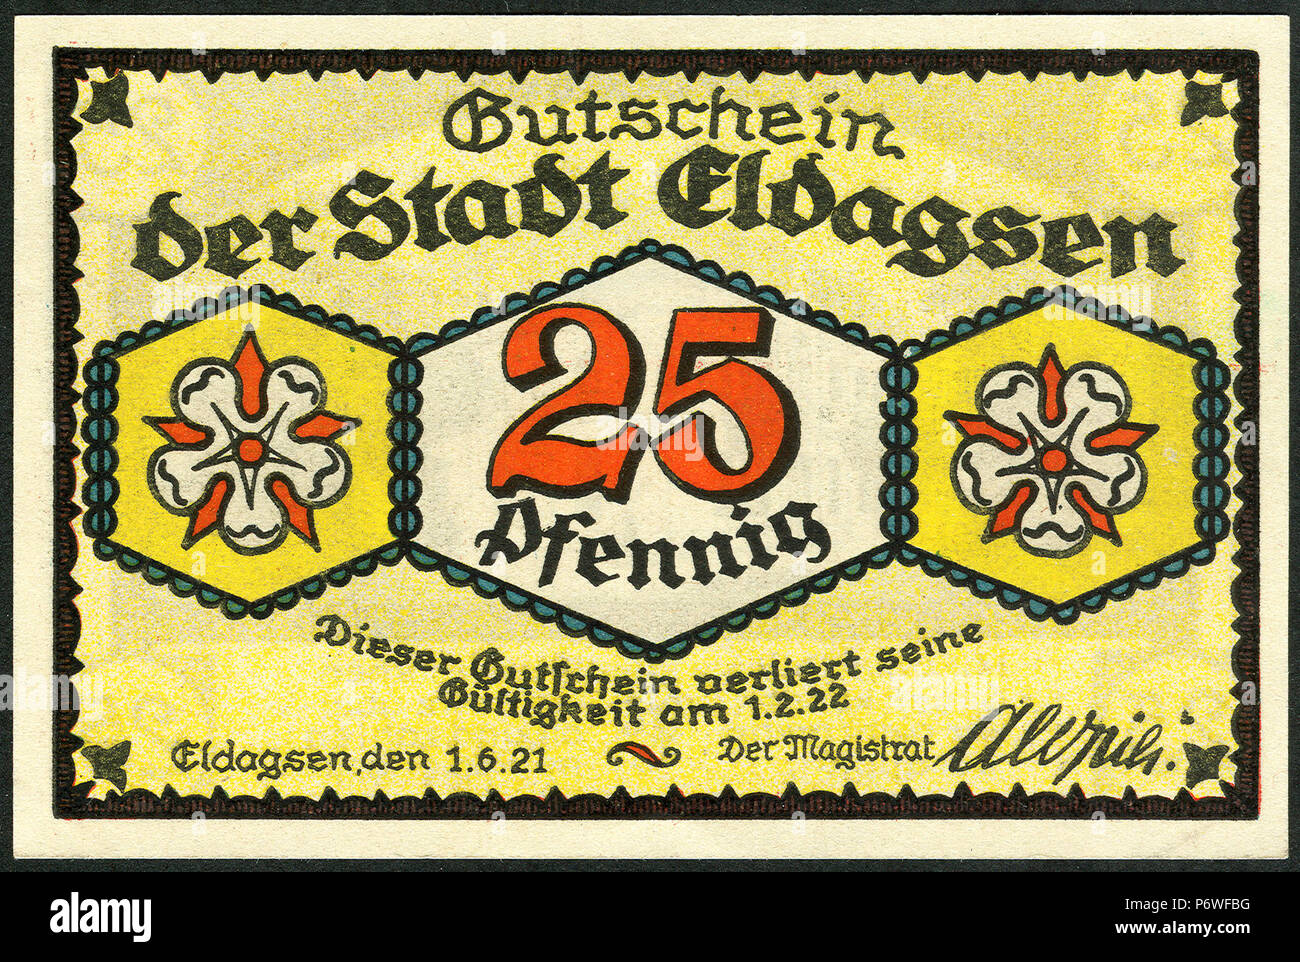 1921-06-01 Gutschein der Stadt Eldagsen, 0,25 Mark 25 Pfennig, gültig bis 1. Februar 1922, a, faksimilierte Unterschrift der Magistrat. Stock Photo